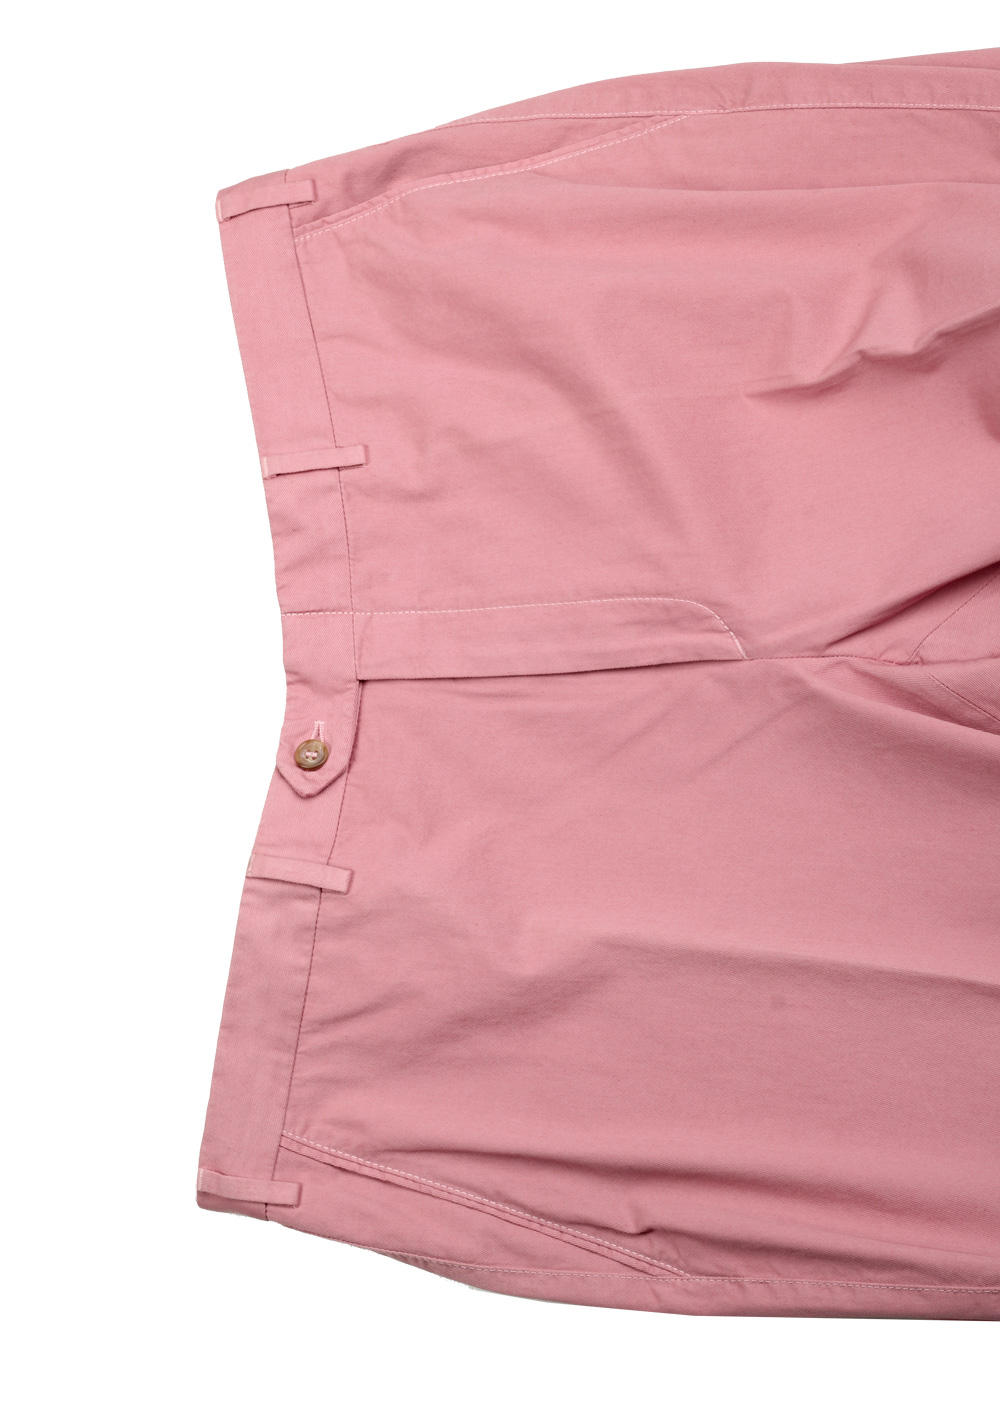 Brioni Pink Cotton Trousers Size 54 / 38 U.S. | Costume Limité